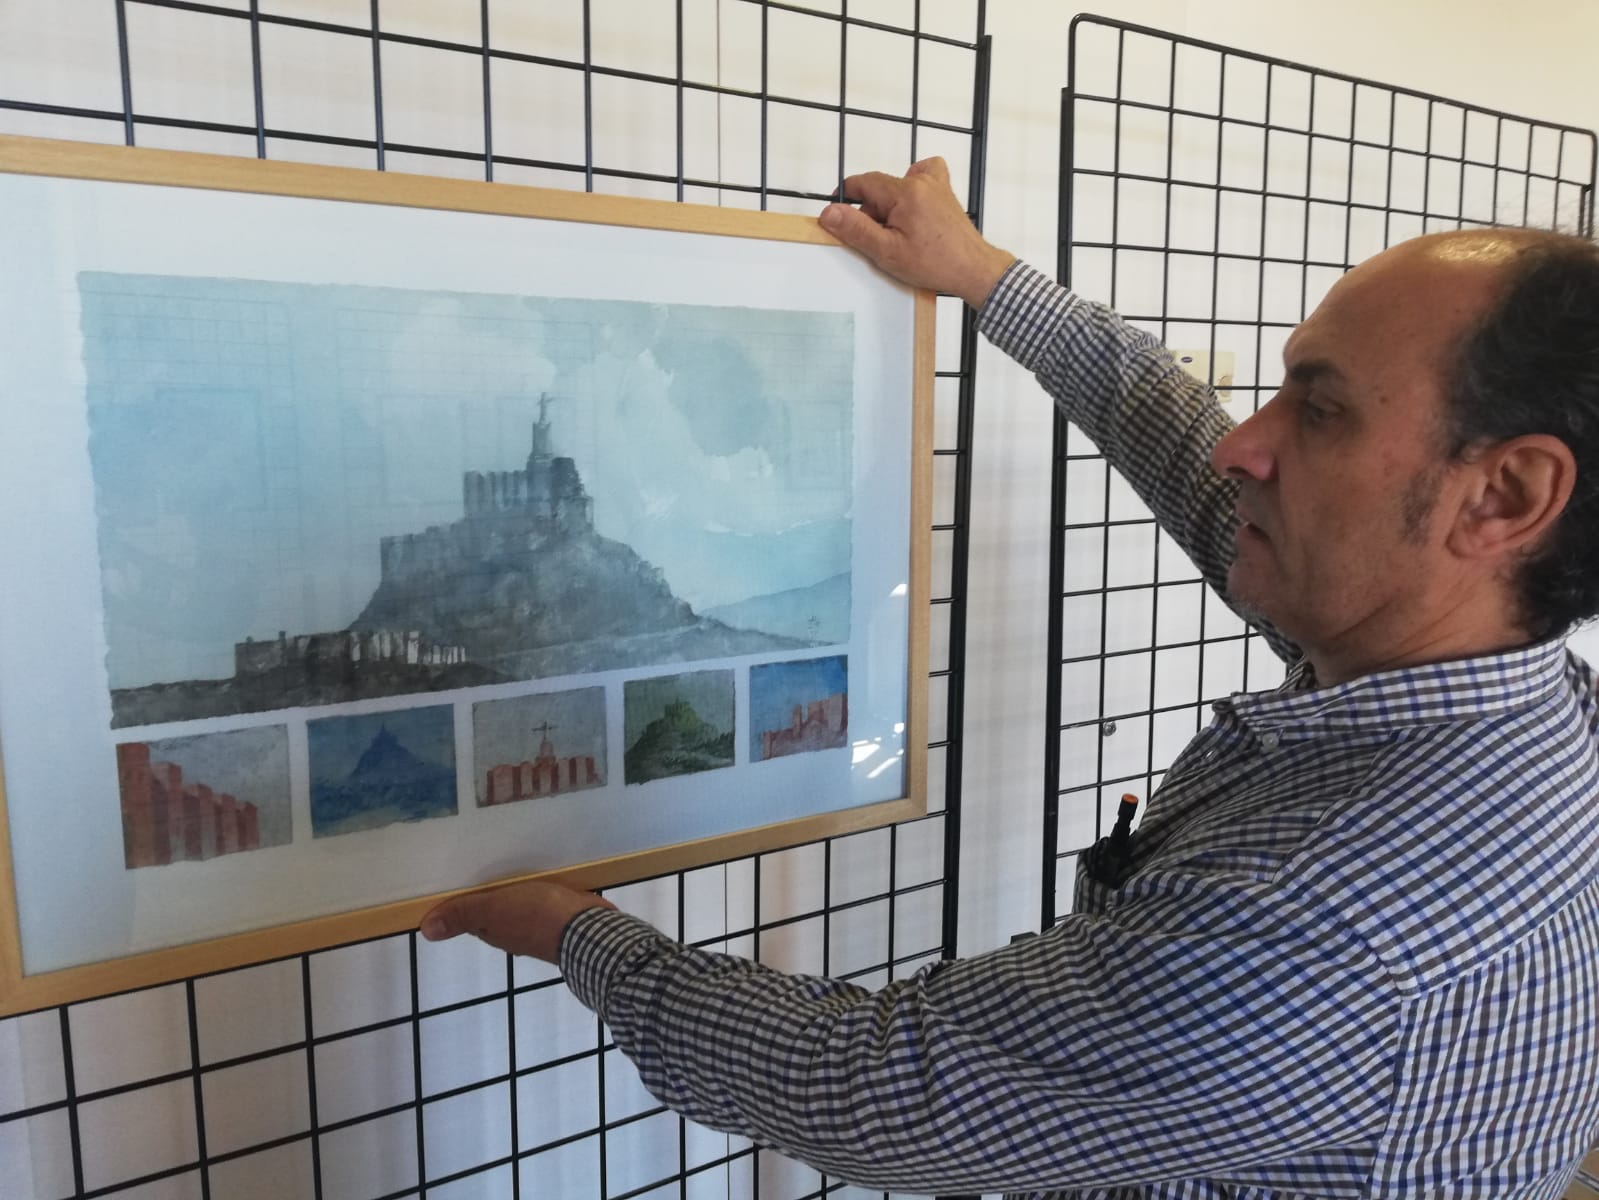 Imagen de la muestra "Castillo Región de Murcia" del artista José Ato, incluida en el Plan de Espacios Expositivos